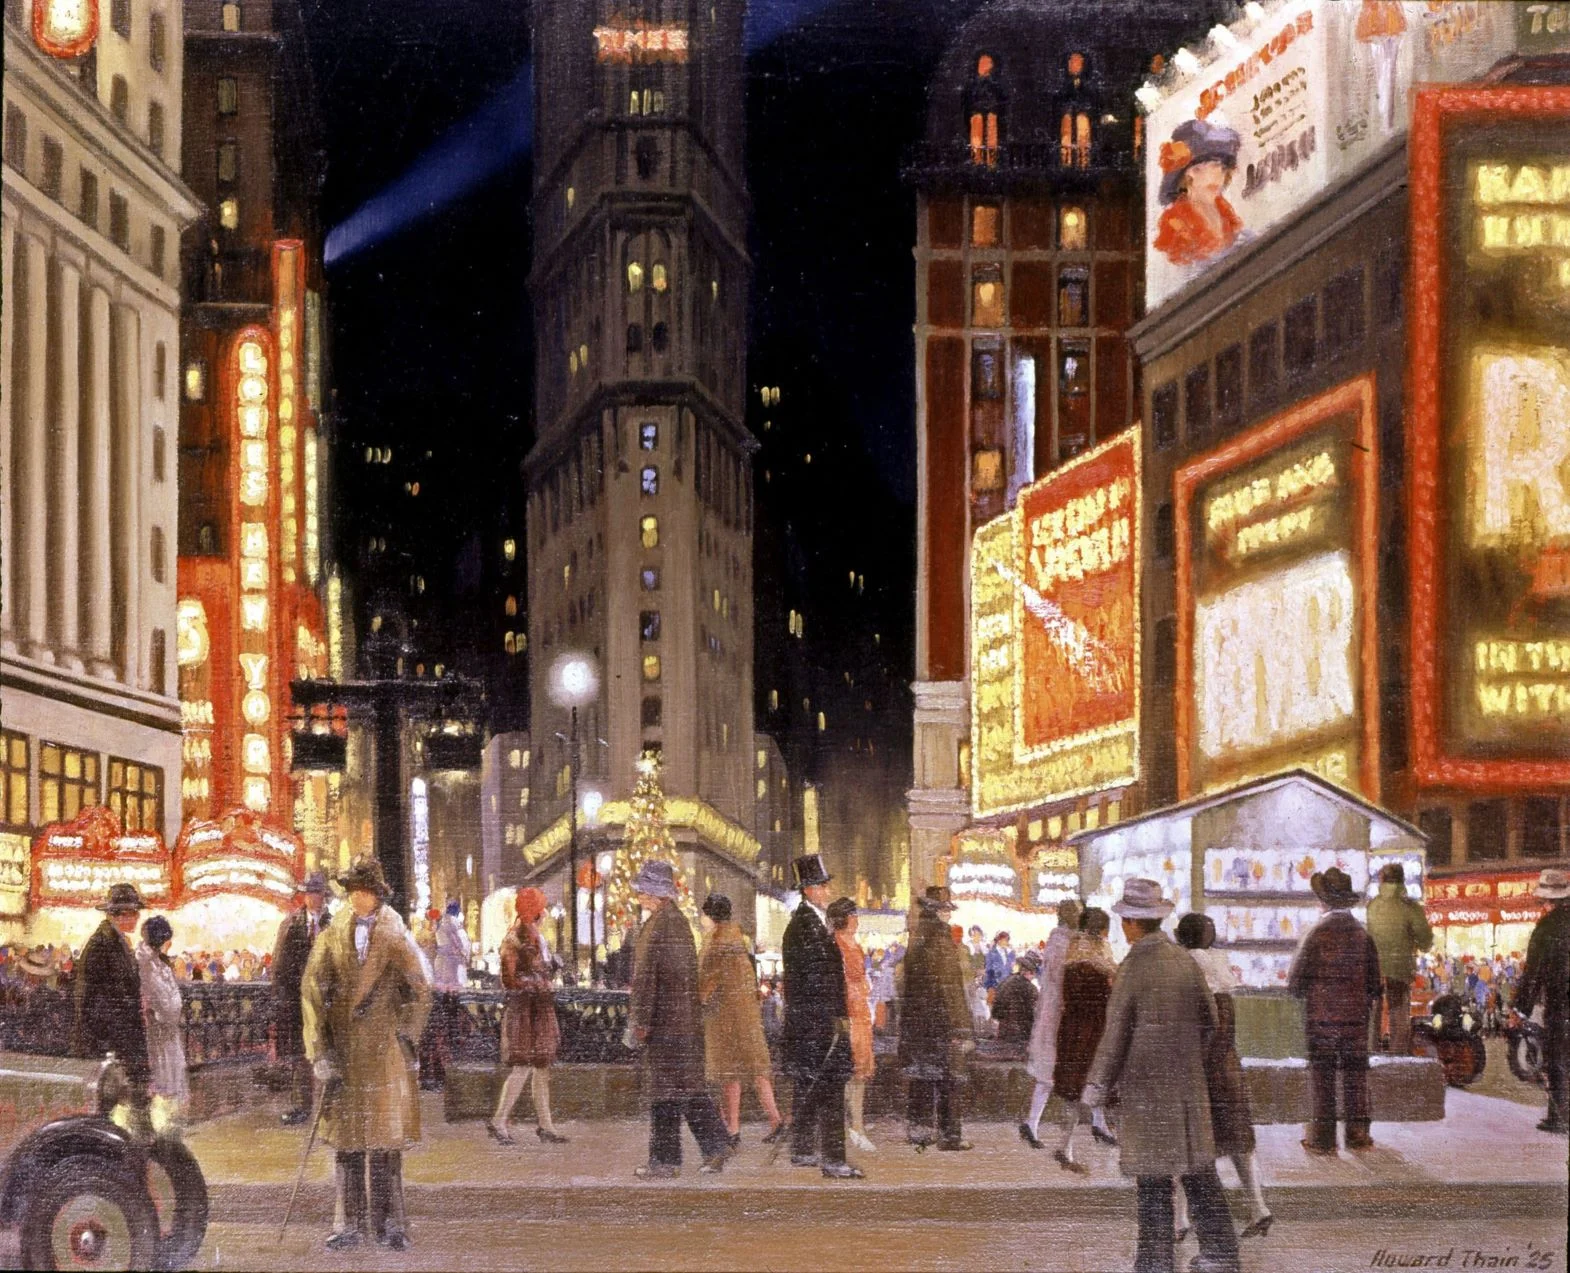 Howard Thain 作品，描繪一九二五年繁華的紐約時代廣場。